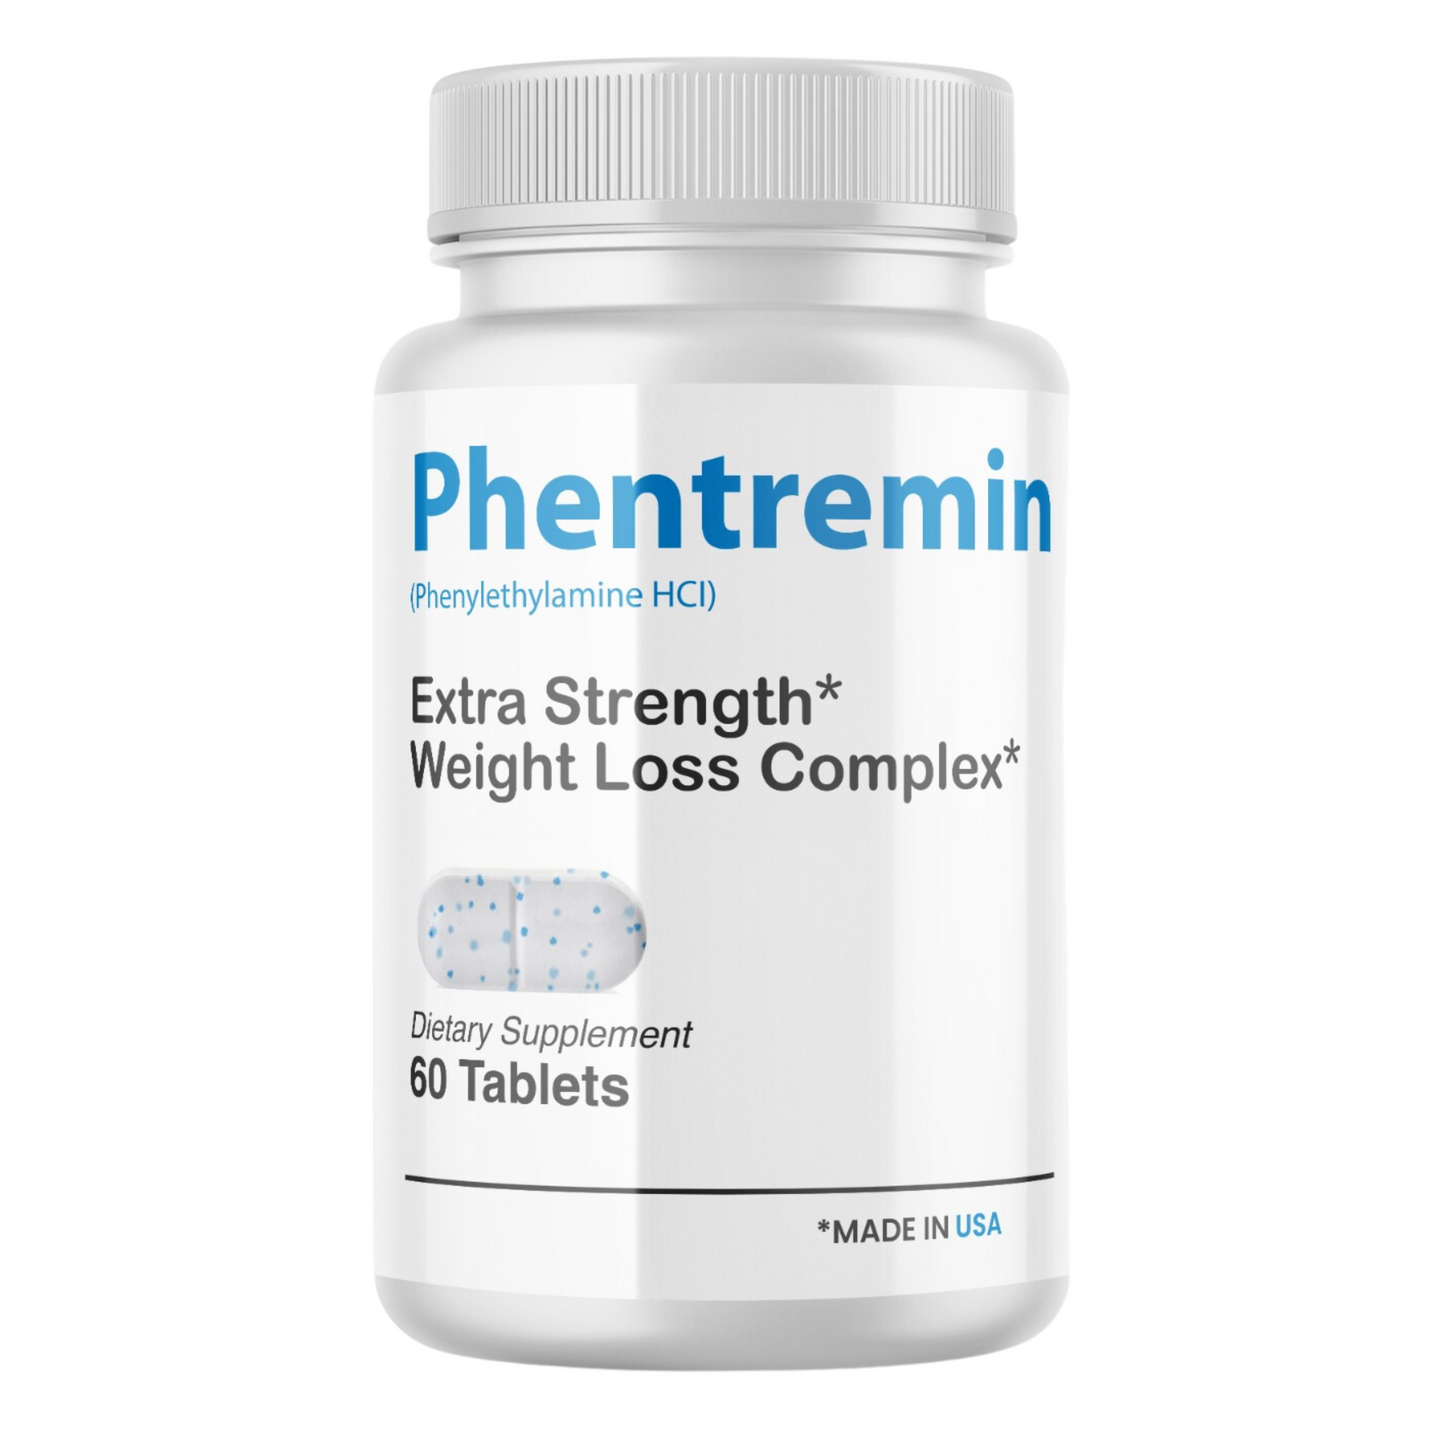 Phentremin - Best Official Fat Burner - 3 Bottle Supply Highest  Professional Grade Ingredients